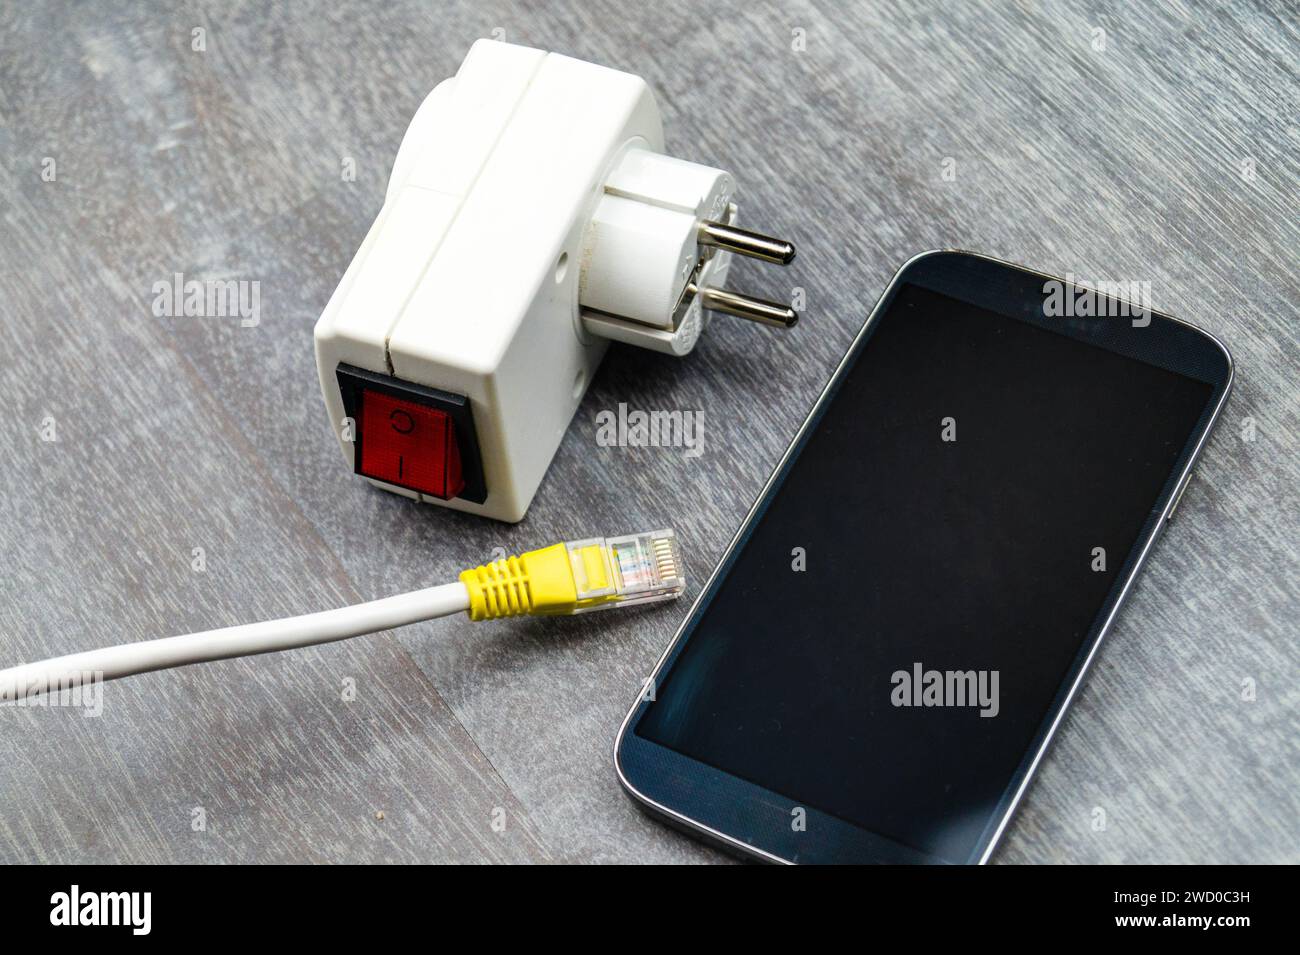 Adattatore presa con interruttore, smartphone e spina di rete, immagine simbolica per Smart Home Foto Stock